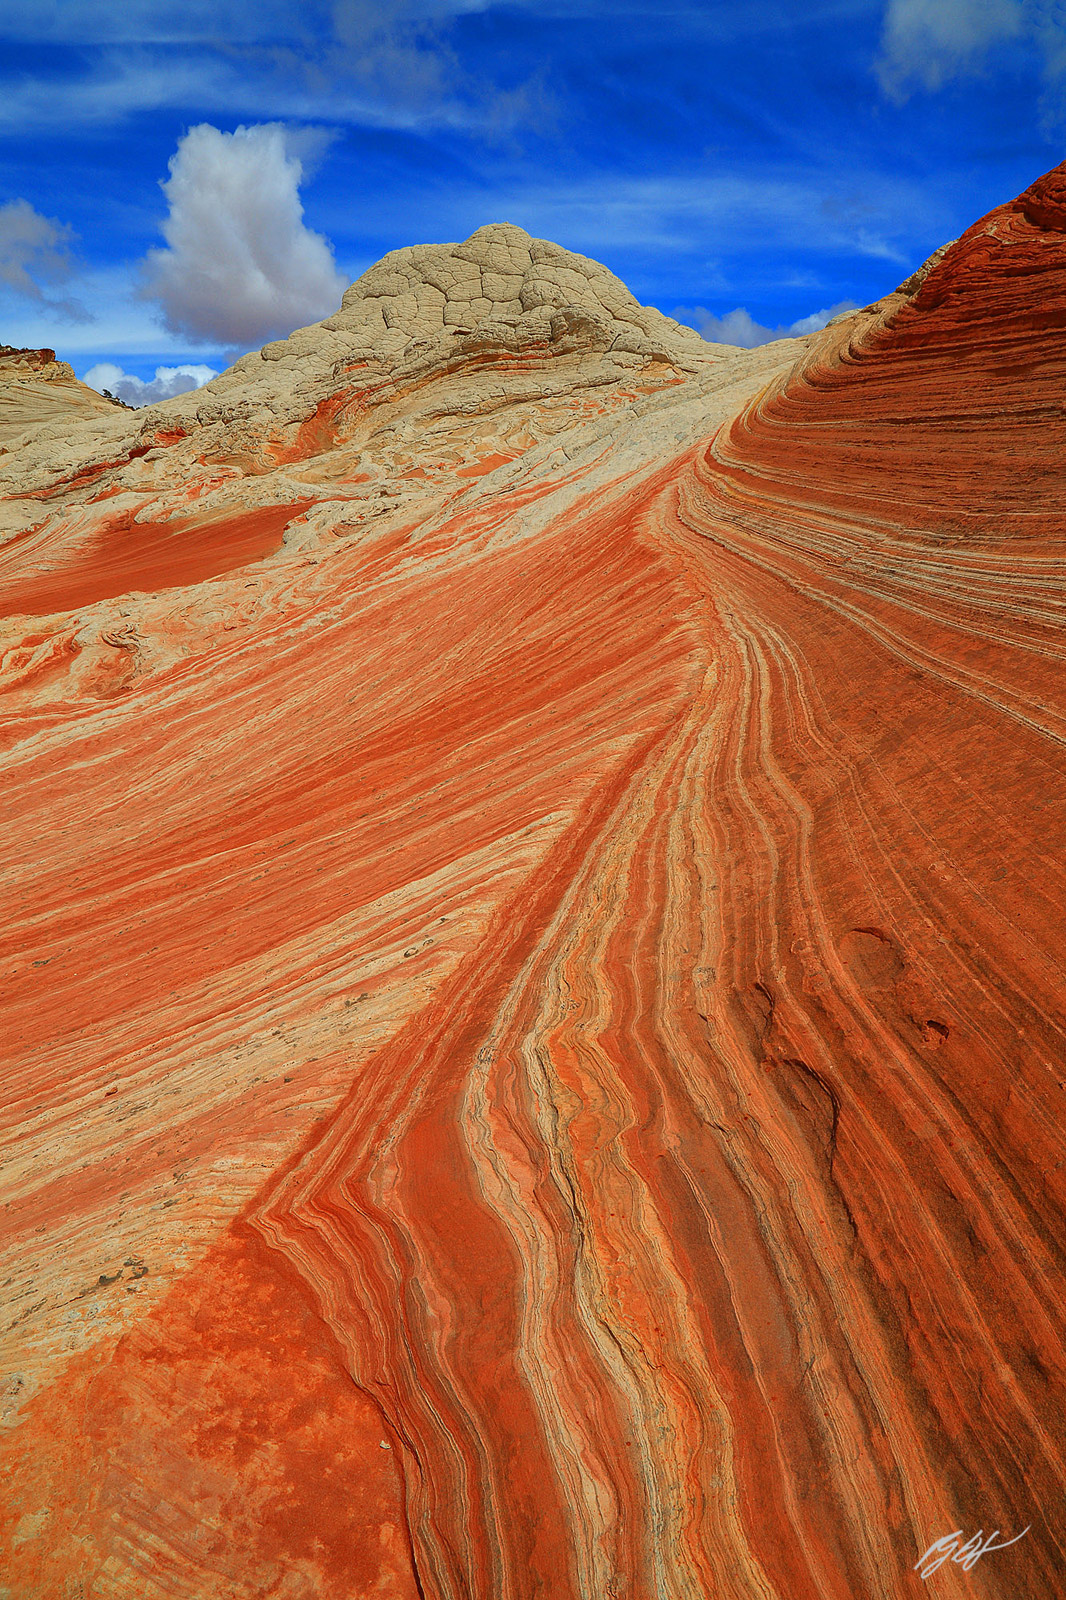 Sandstone Swirl in the White Pocket formation in the Vermillion Cliffs Wilderness in Arizona